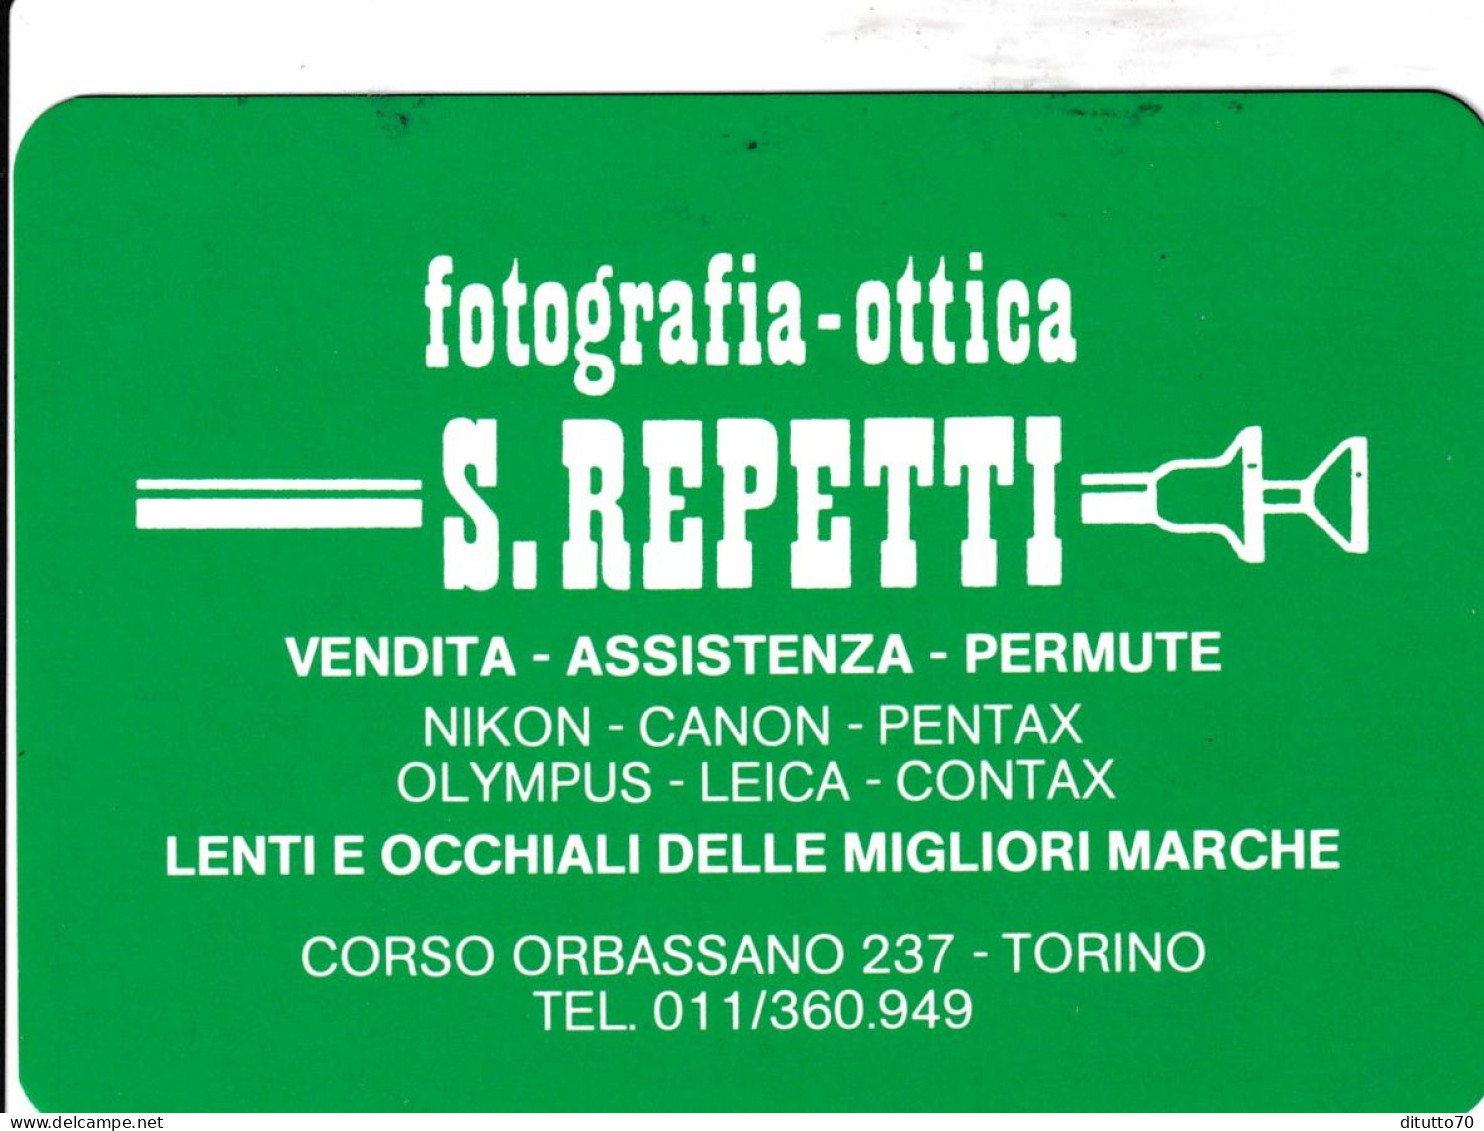 Calendarietto - Fotografia Ottica - S.beretti - Torino - Anno 1989 - Petit Format : 1981-90